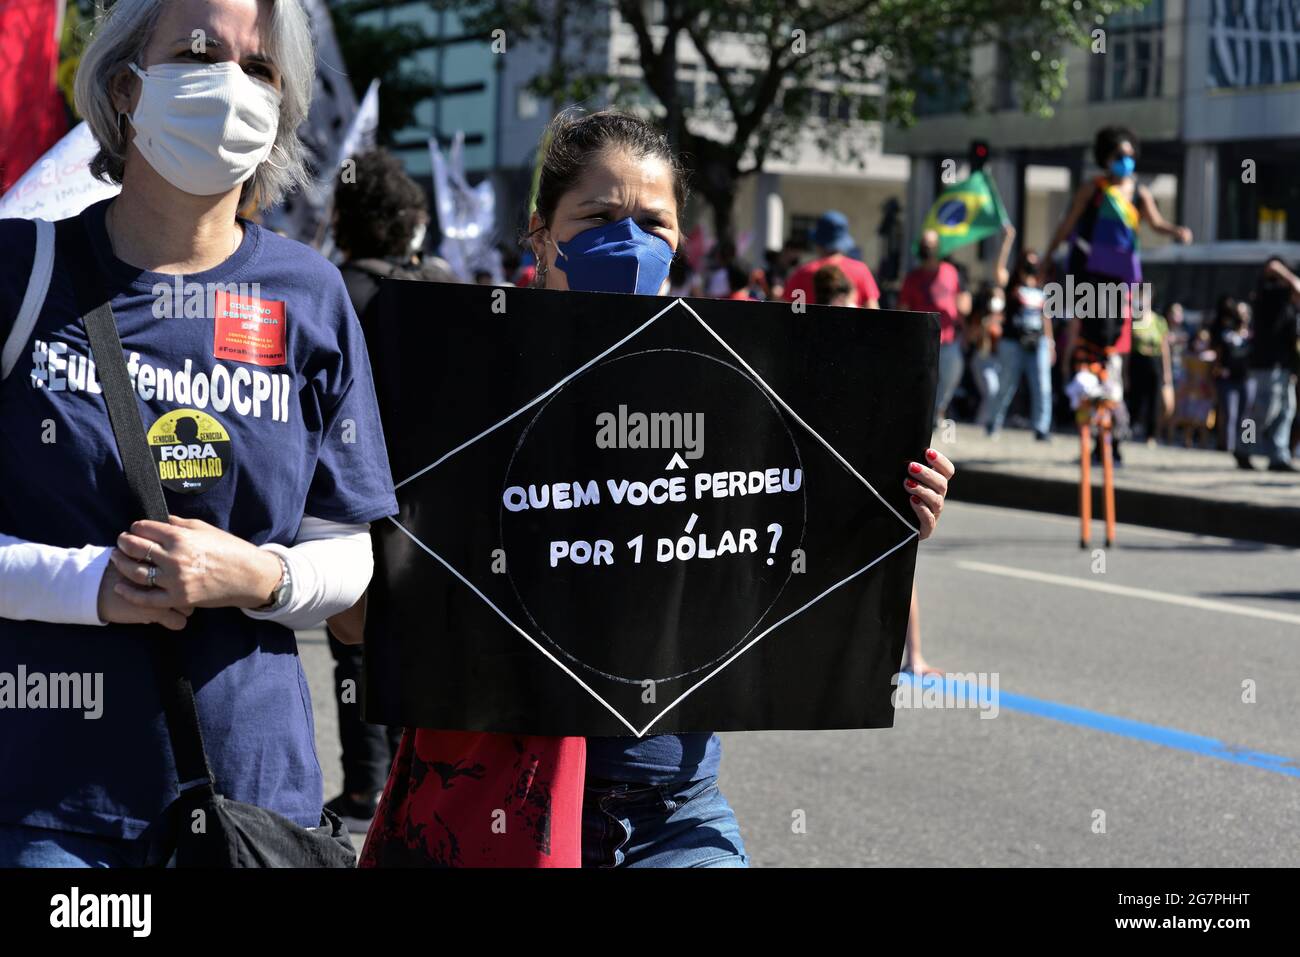 Brasile, Rio de Janeiro – 3 luglio 2021: Una donna ha un segno che dice ‘chi hai perso per 1 dollaro’ durante una protesta contro il presidente brasiliano Bolsonaro. Foto Stock